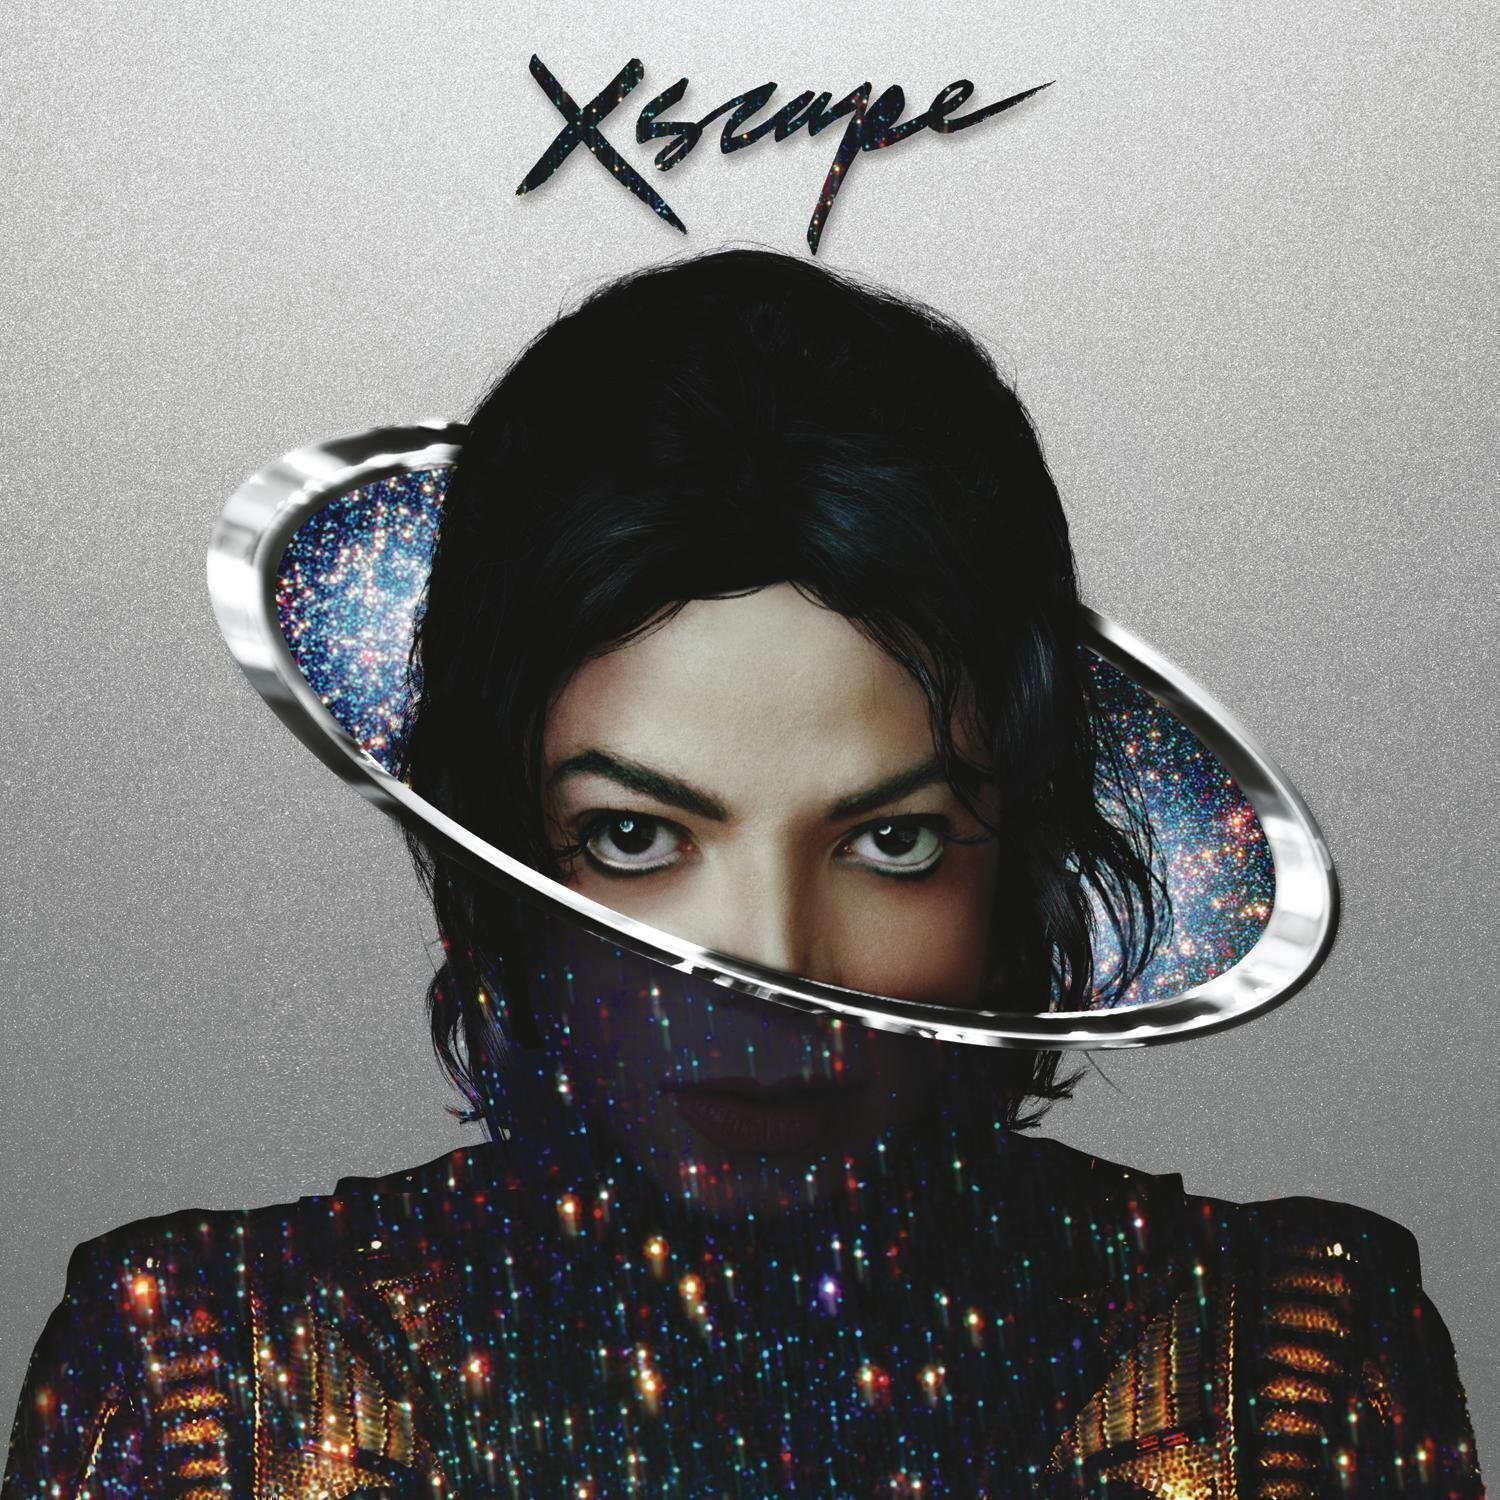 Michael jackson albums. Michael Jackson 2014 Xscape. Michael Jackson Xscape album. Michael Jackson Chicago обложка.